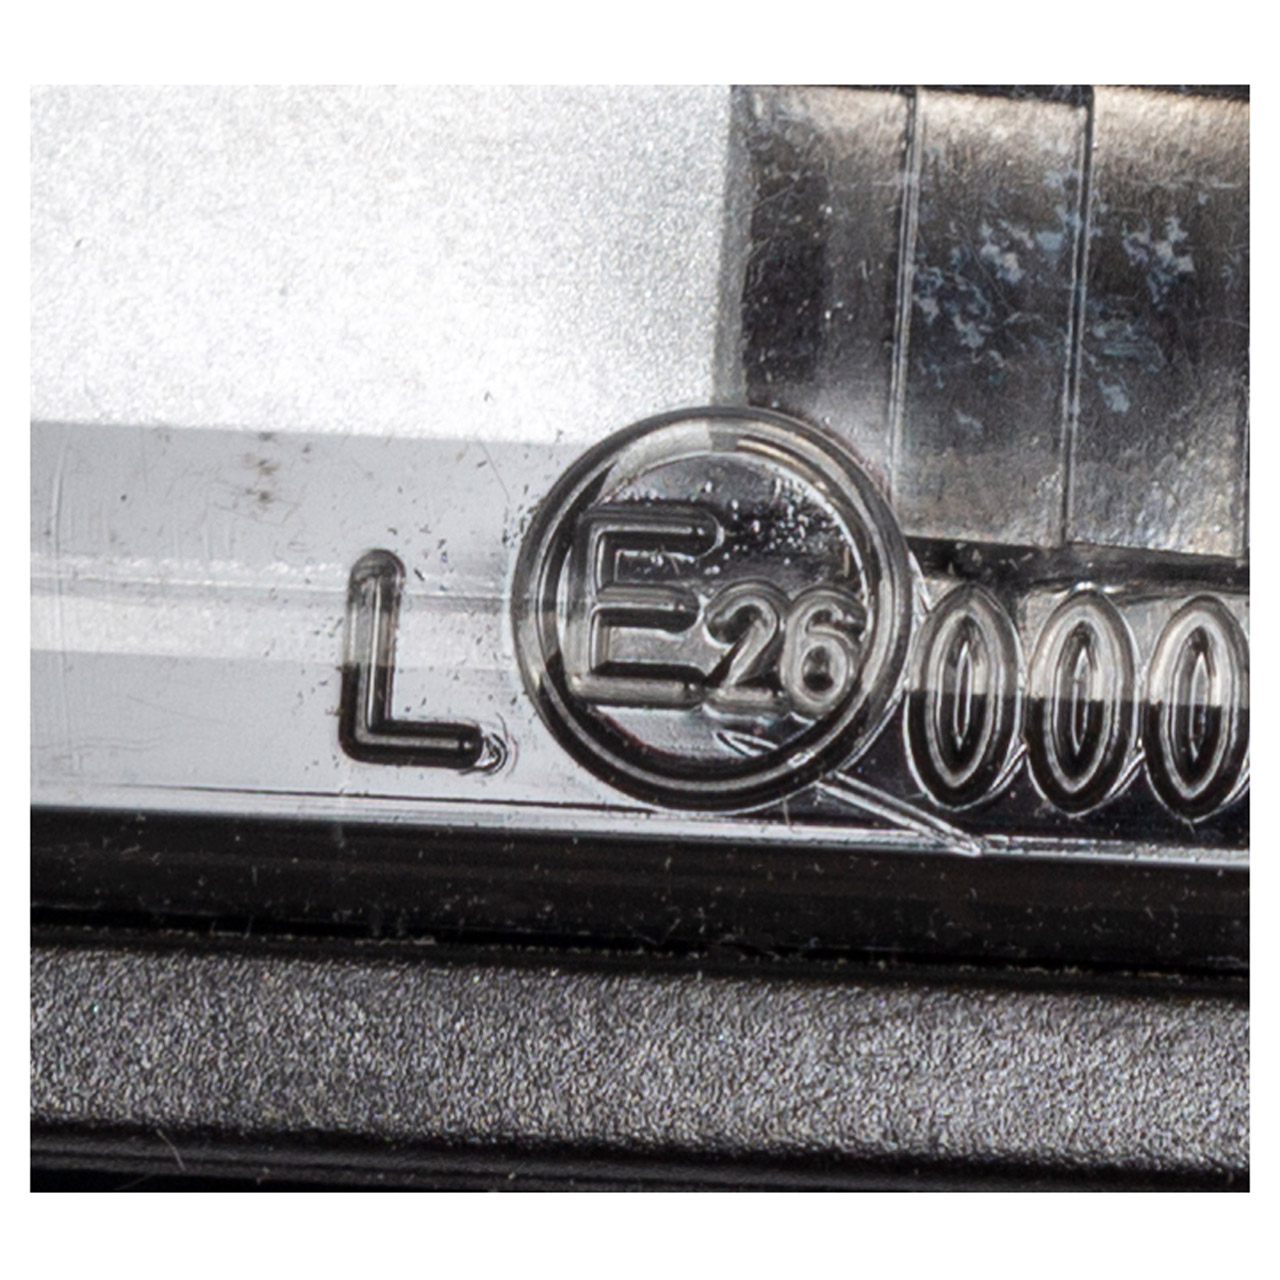 ORIGINAL VW Kennzeichenleuchte Kennzeichenbeleuchtung Bora Golf 4 Lupo Polo 6N2 1J6943021B